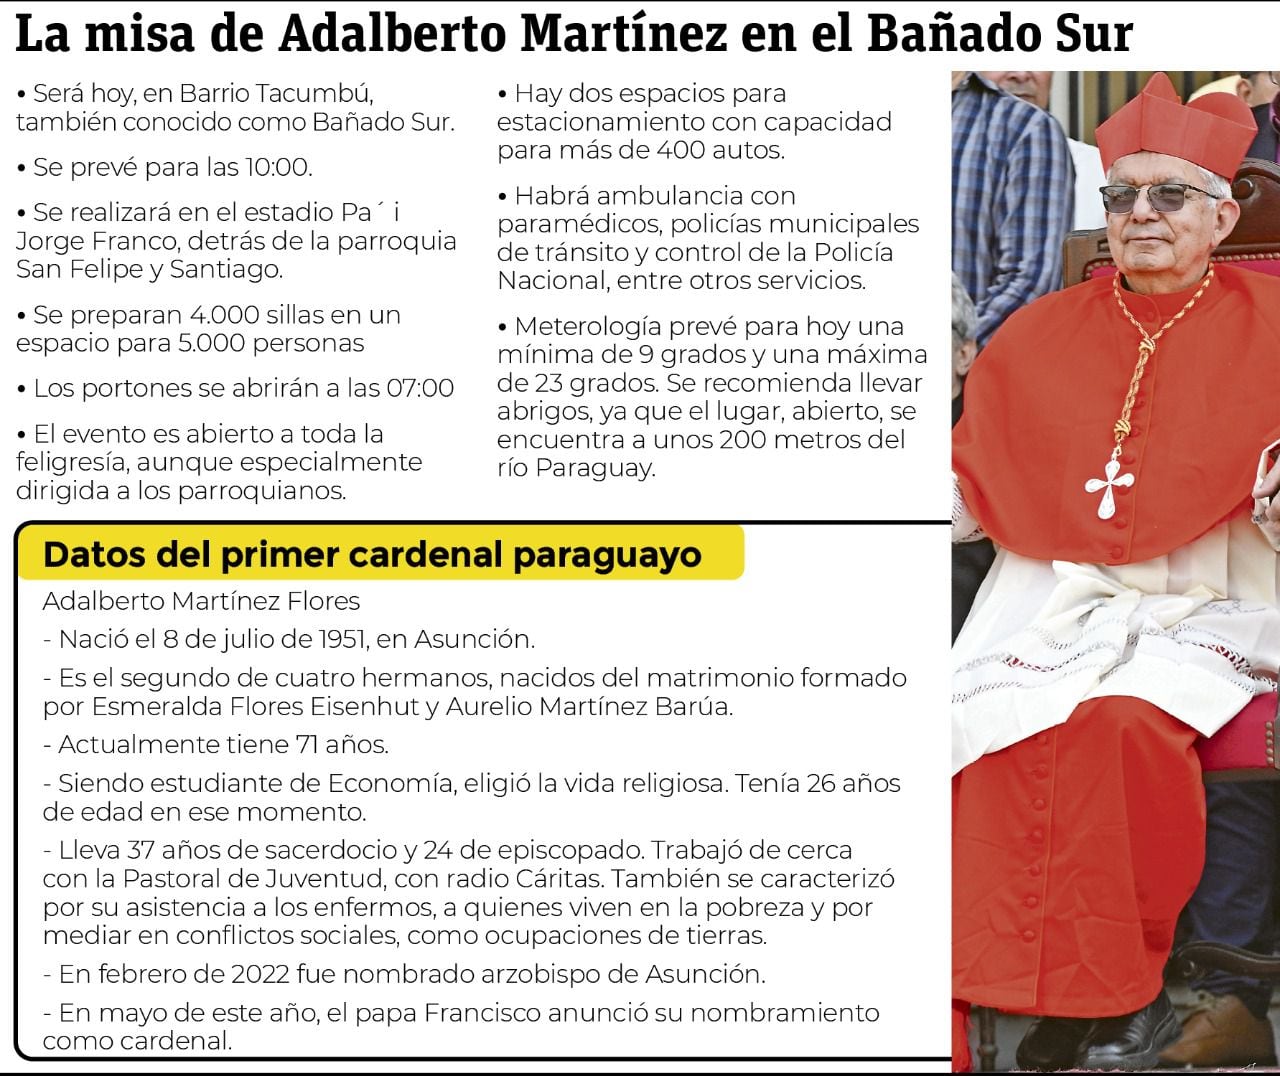 Detalles sobre el cardenal Adalberto Martínez y su primera misa en Paraguay.